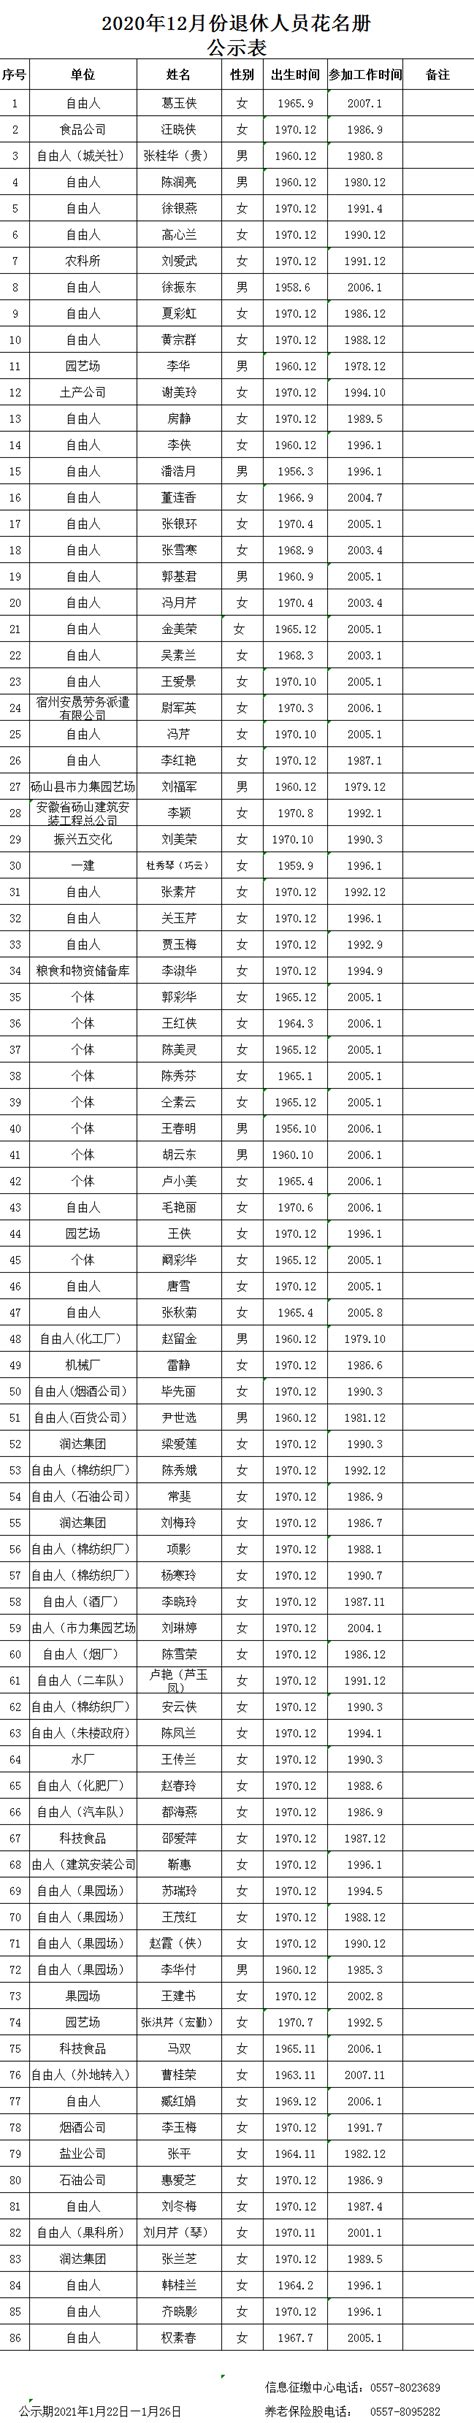 2020年12月份退休人员花名册公示表_砀山县人民政府